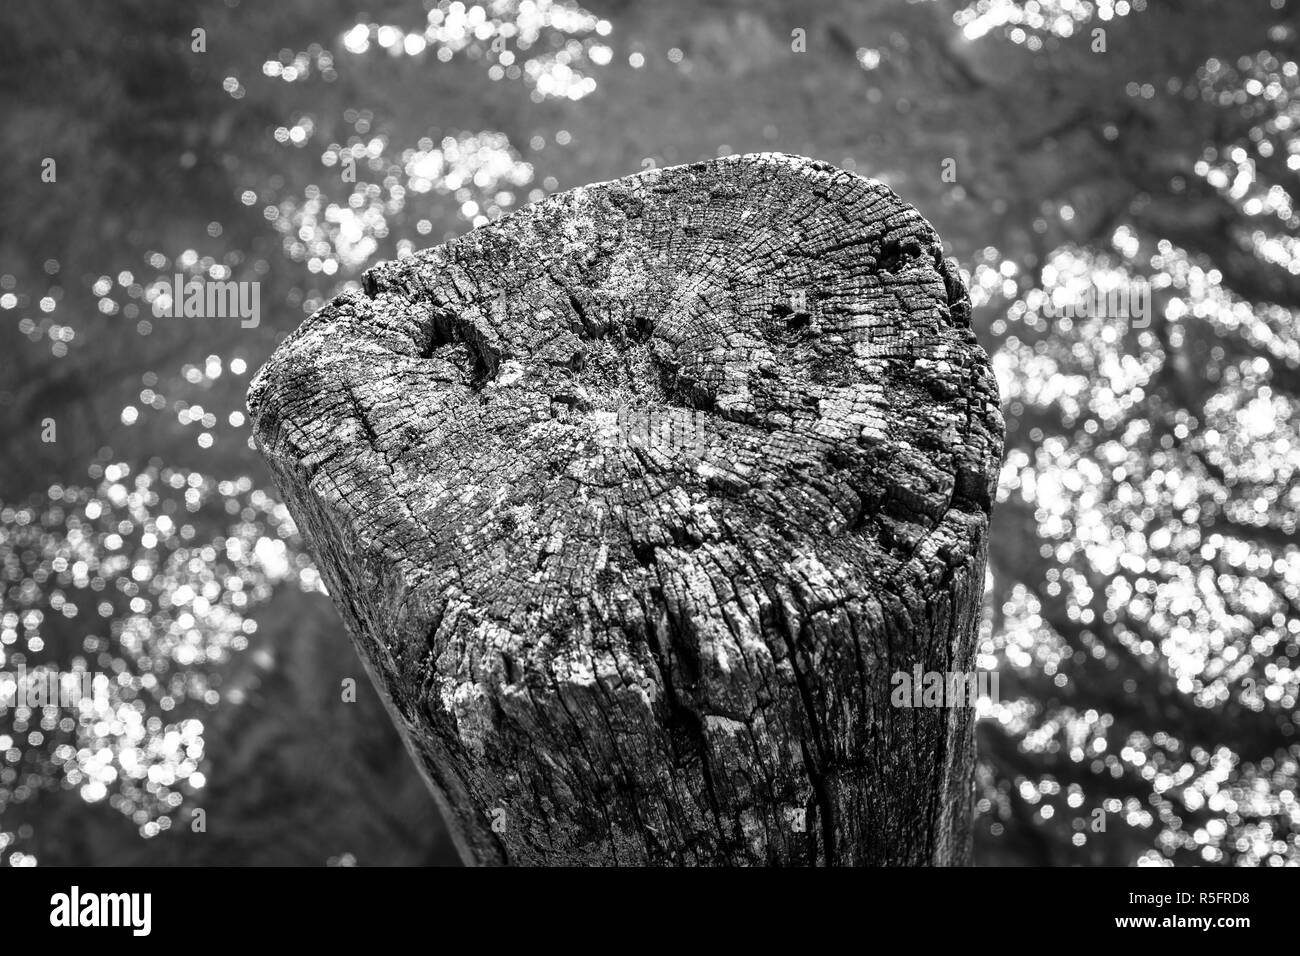 Der alten stumpf ragt aus dem Wasser. Hintergrund. Schwarz und weiß. Stockfoto